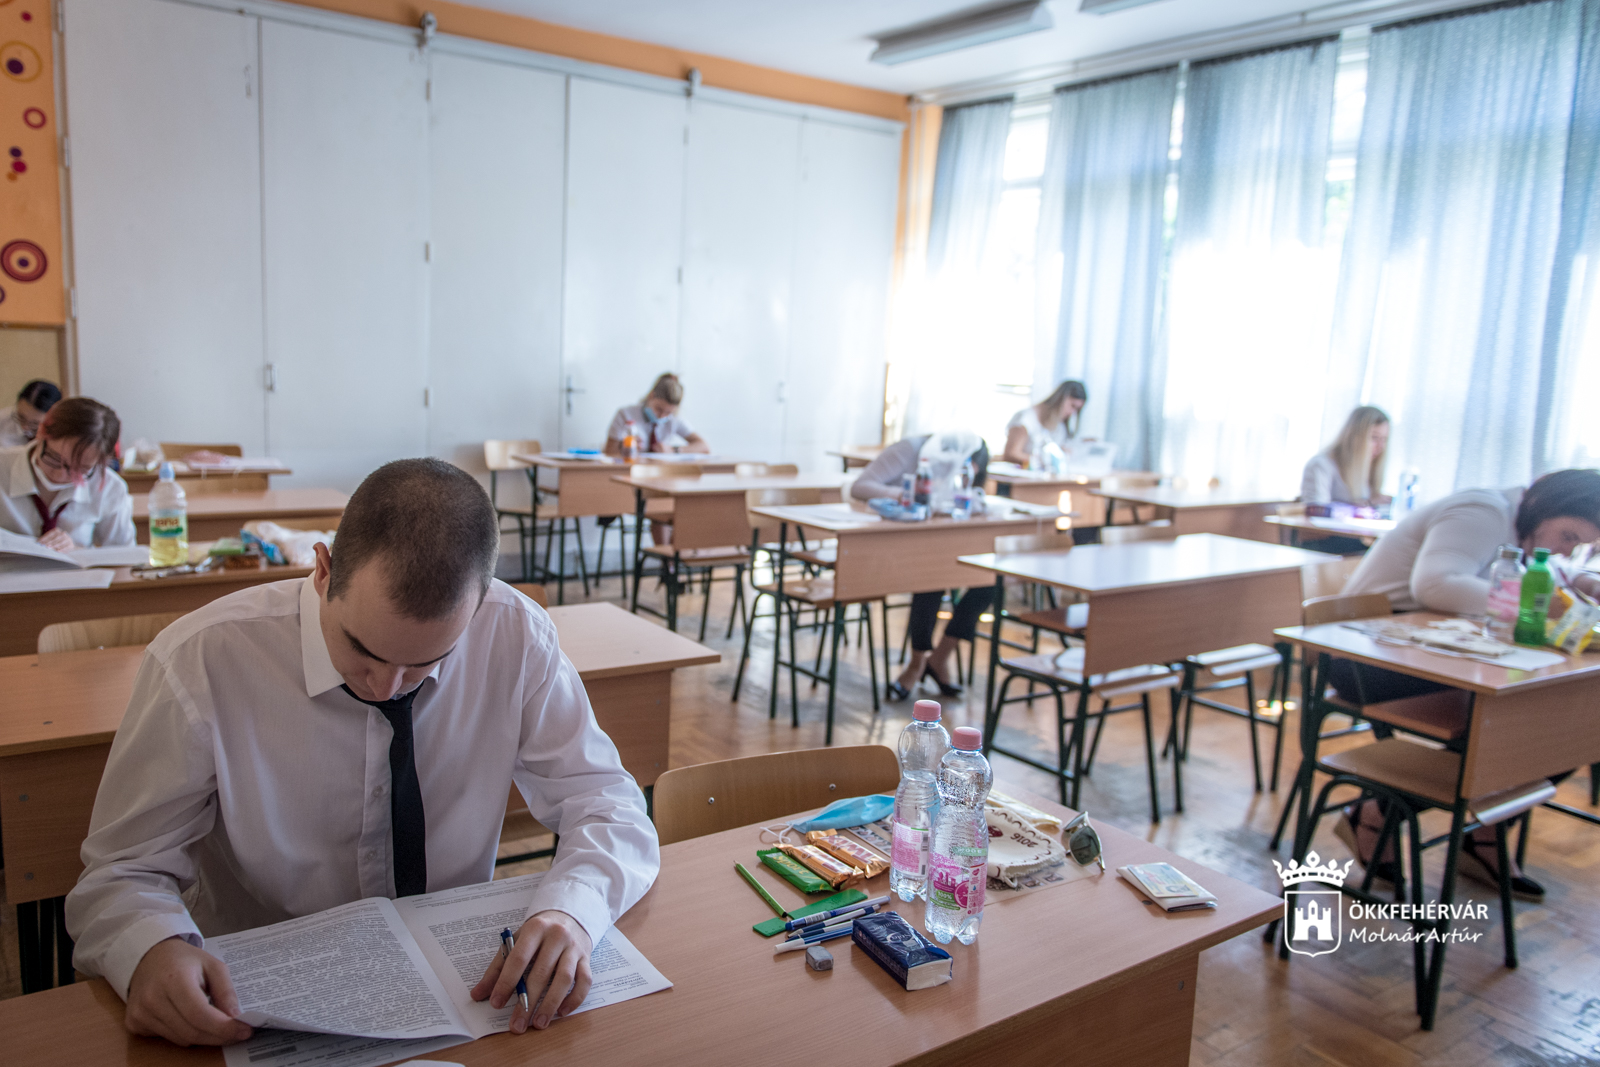 Rendben elkezdődött a különleges érettségi vizsgaidőszak Székesfehérváron